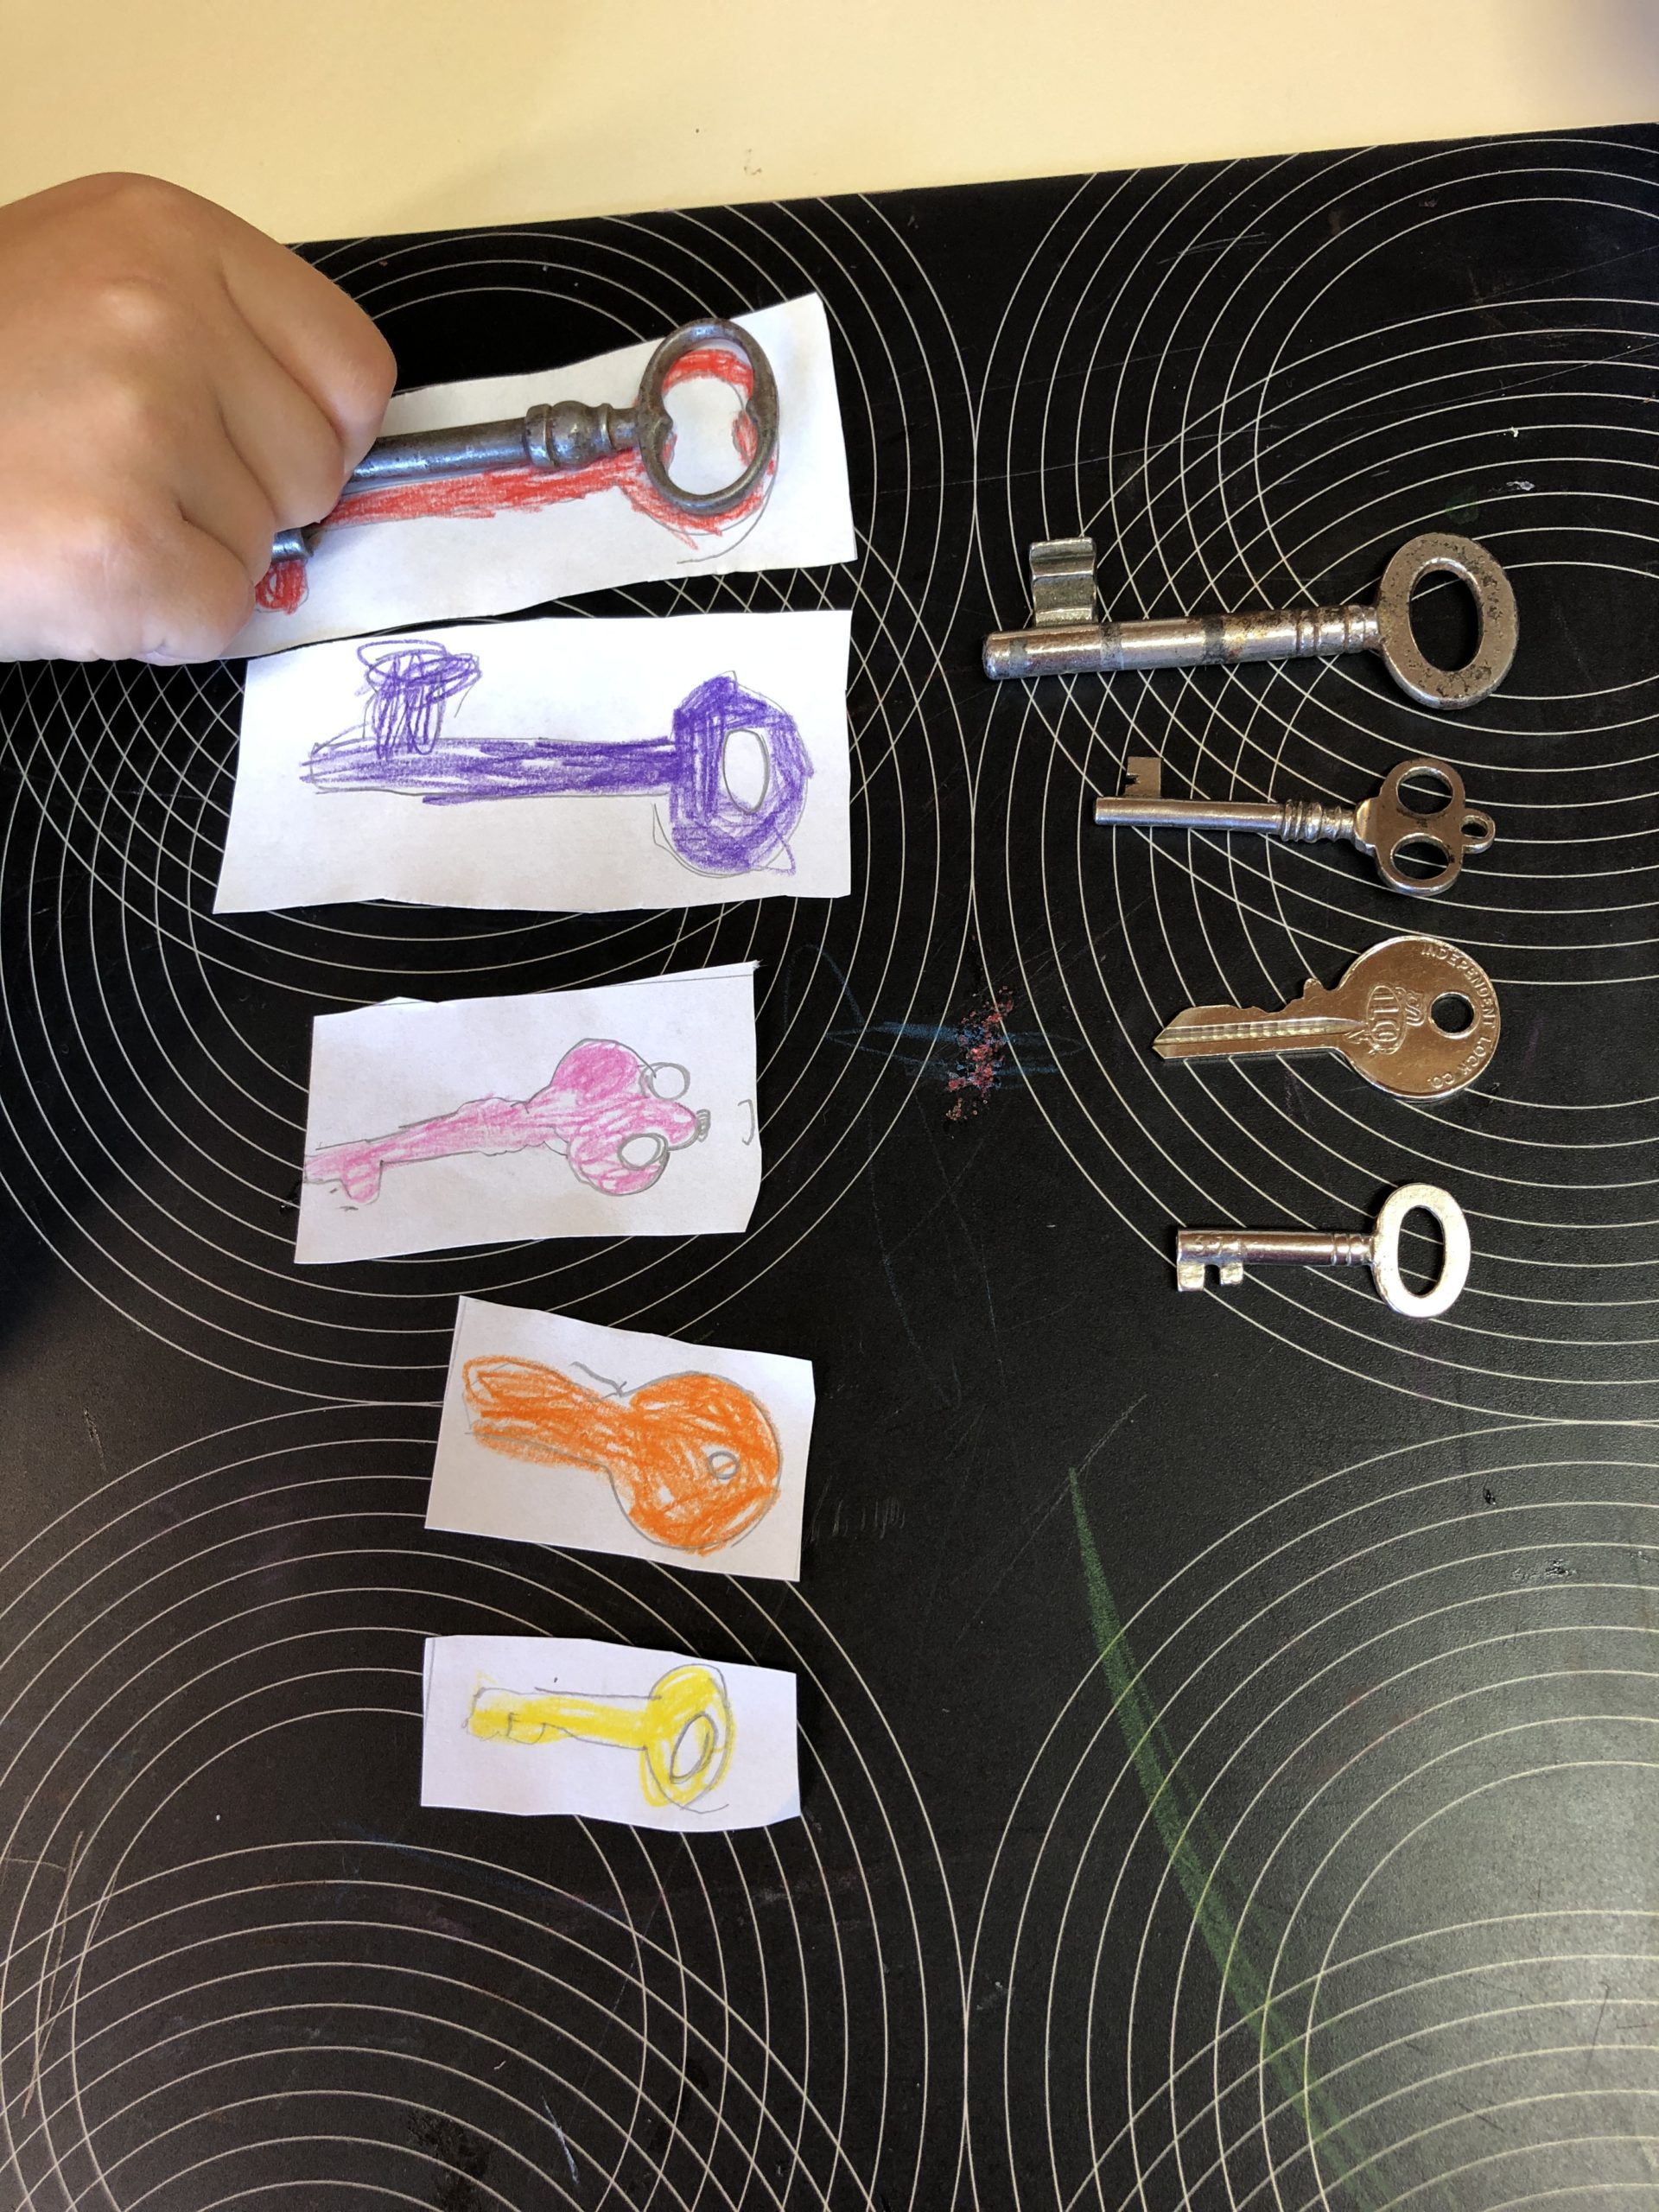 Bild zum Schritt 21 für das Bastel- und DIY-Abenteuer für Kinder: 'Als Kontrolle: legt die echten Schlüssel wieder auf die gemalten...'